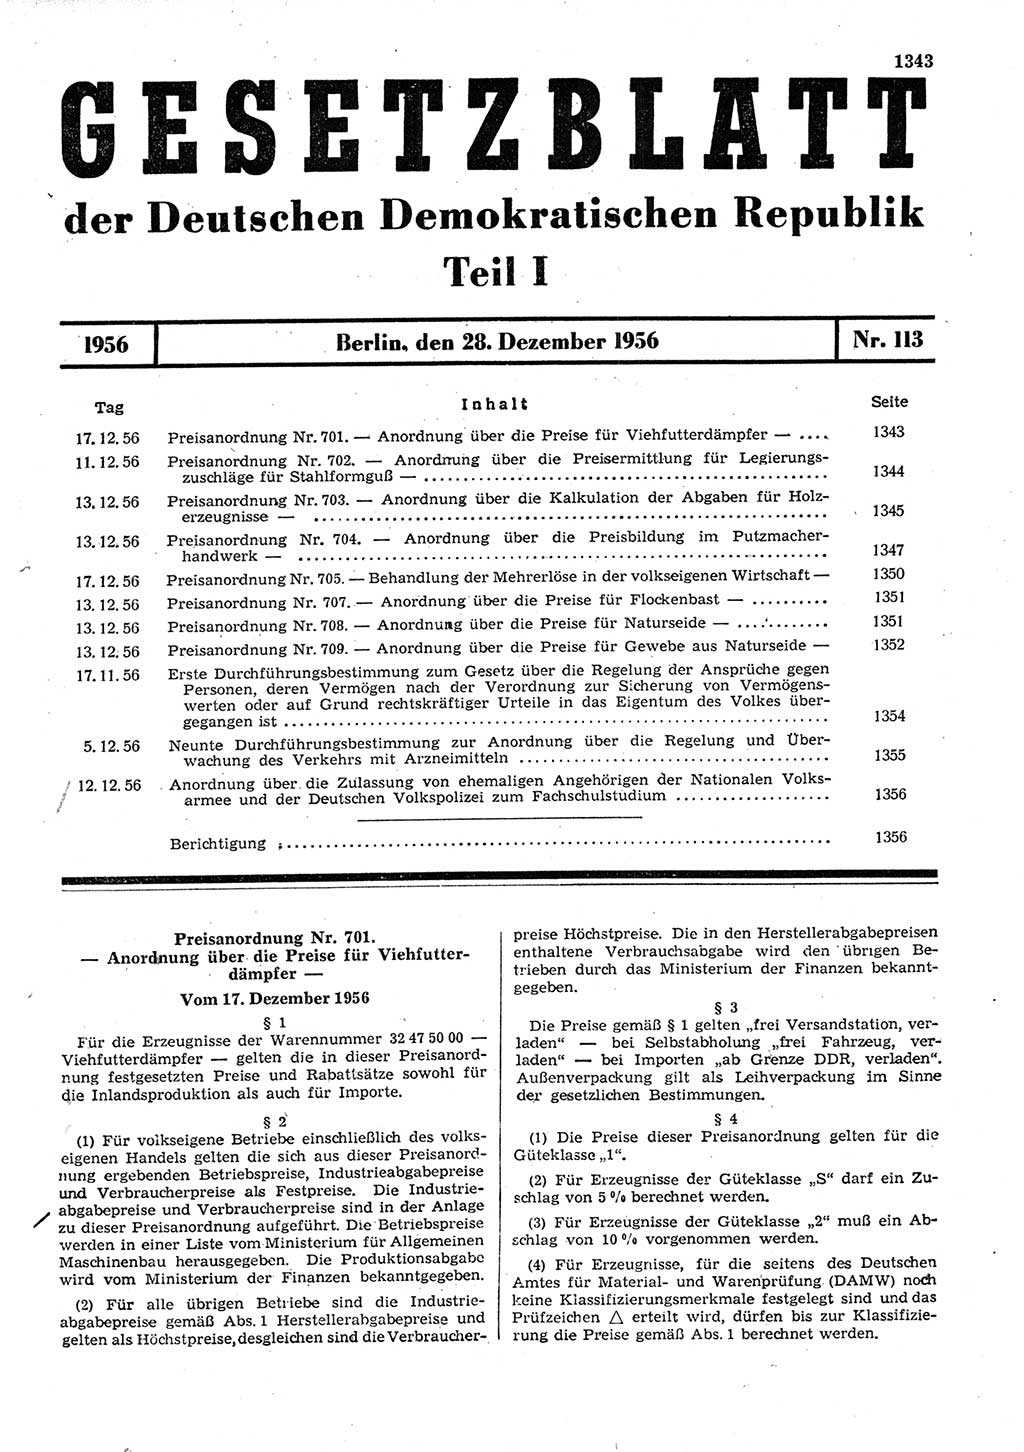 Gesetzblatt (GBl.) der Deutschen Demokratischen Republik (DDR) Teil Ⅰ 1956, Seite 1343 (GBl. DDR Ⅰ 1956, S. 1343)